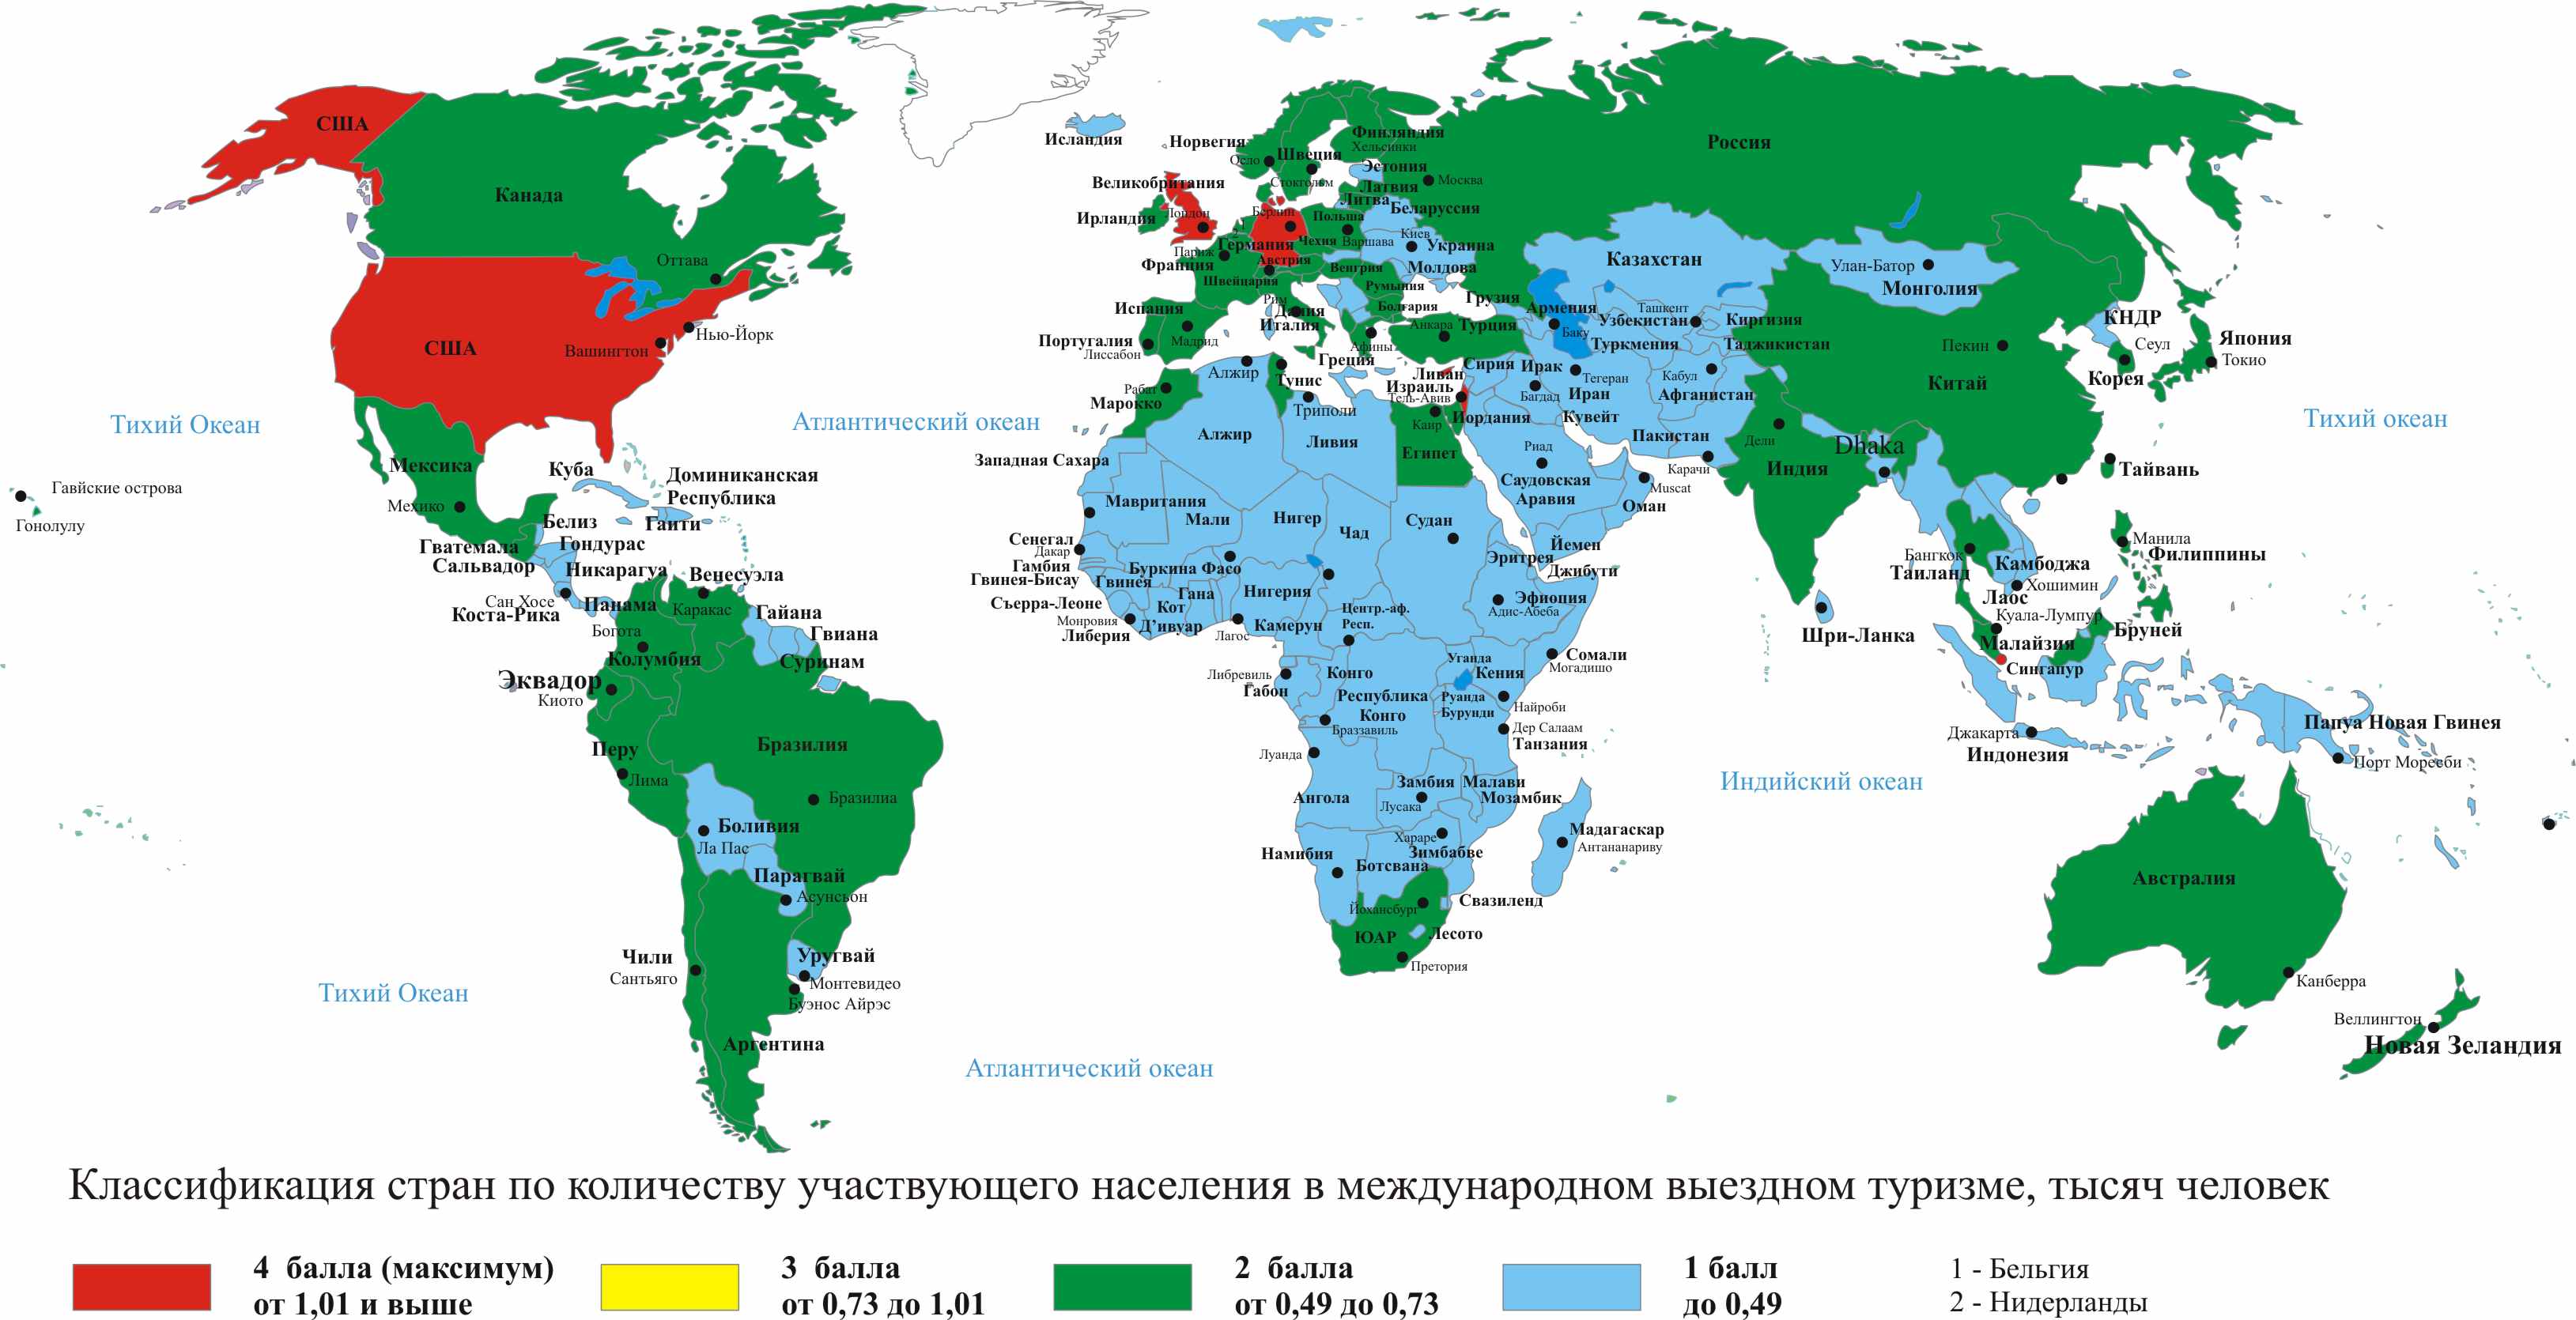 Развивающиеся страны севера. Районы международного туризма на карте. Центры международного туризма в мире.